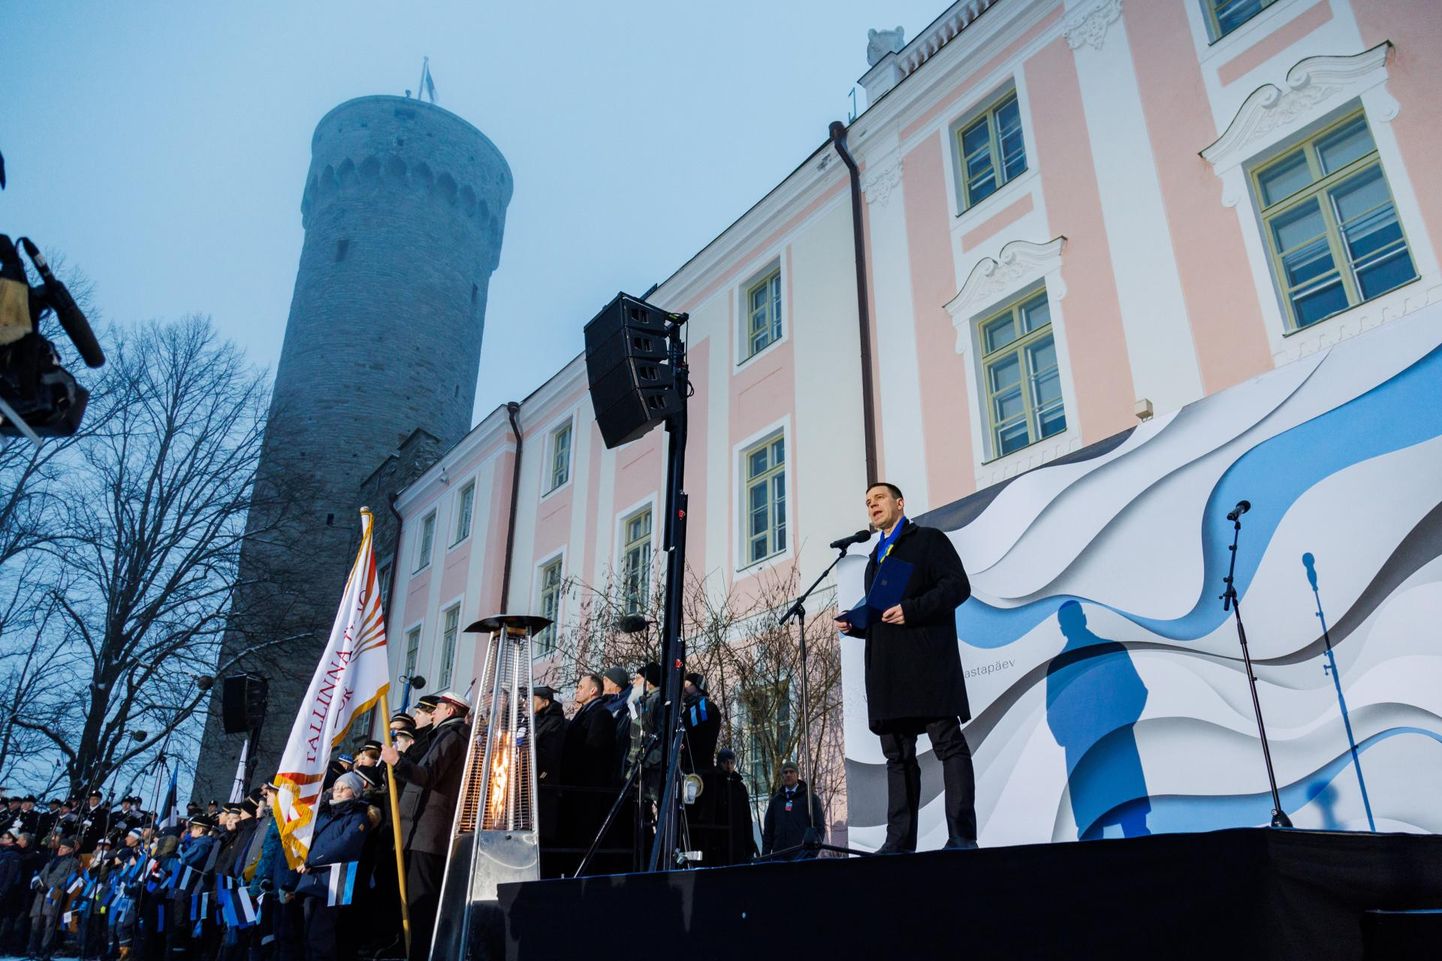 Tallinnas algas Eesti Vabariigi 105. aastapäeva tähistamine kombe kohaselt päikesetõusul piduliku lipuheiskamise tseremooniaga Toompeal Komandandi aias. FOTO: Mihkel Maripuu